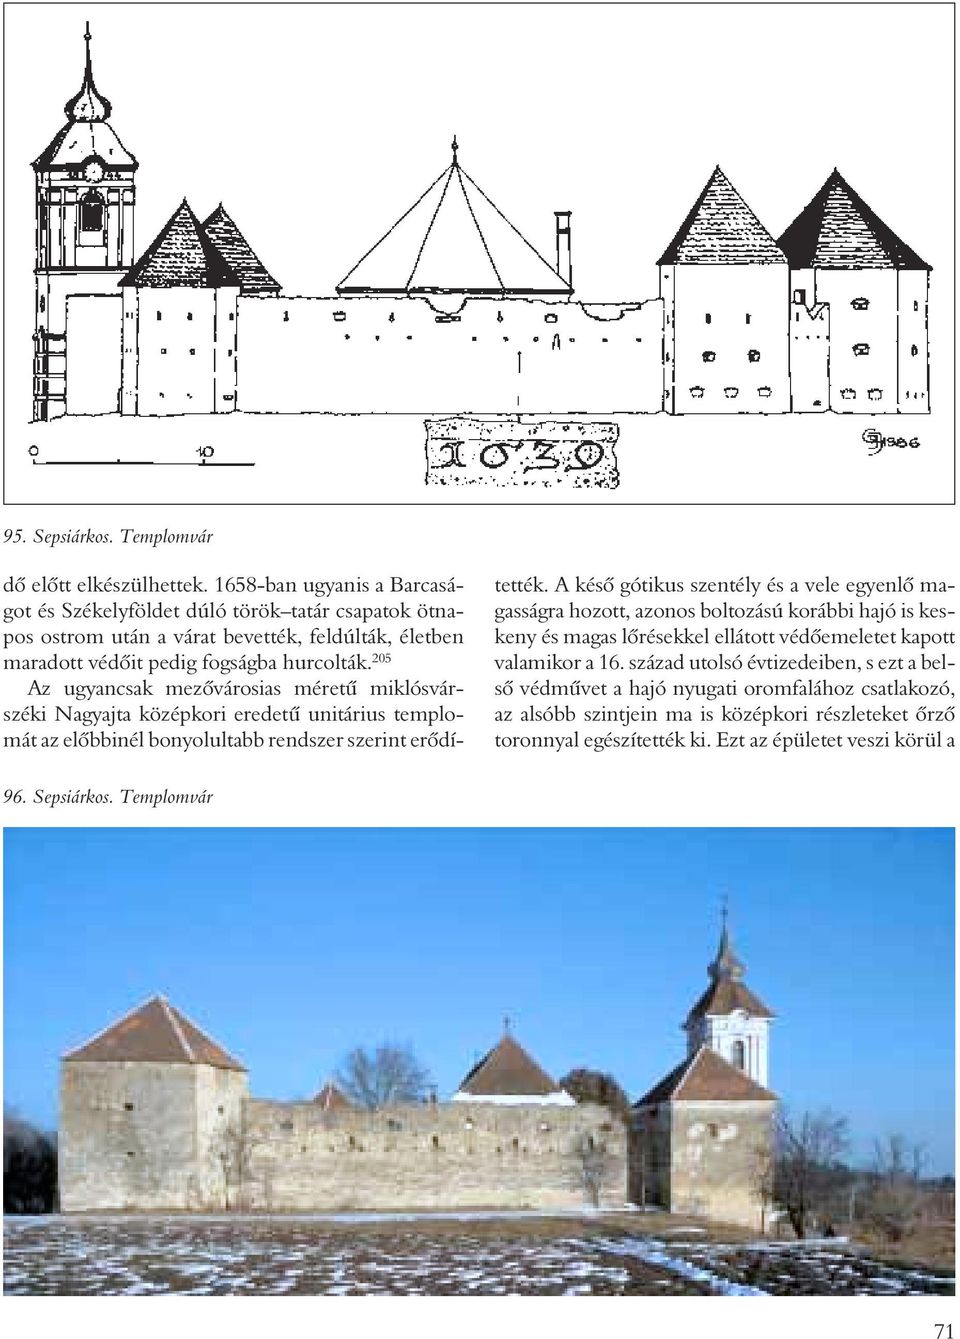 205 Az ugyancsak mezõvárosias méretû miklósvárszéki Nagyajta középkori eredetû unitárius templomát az elõbbinél bonyolultabb rendszer szerint erõdítették.